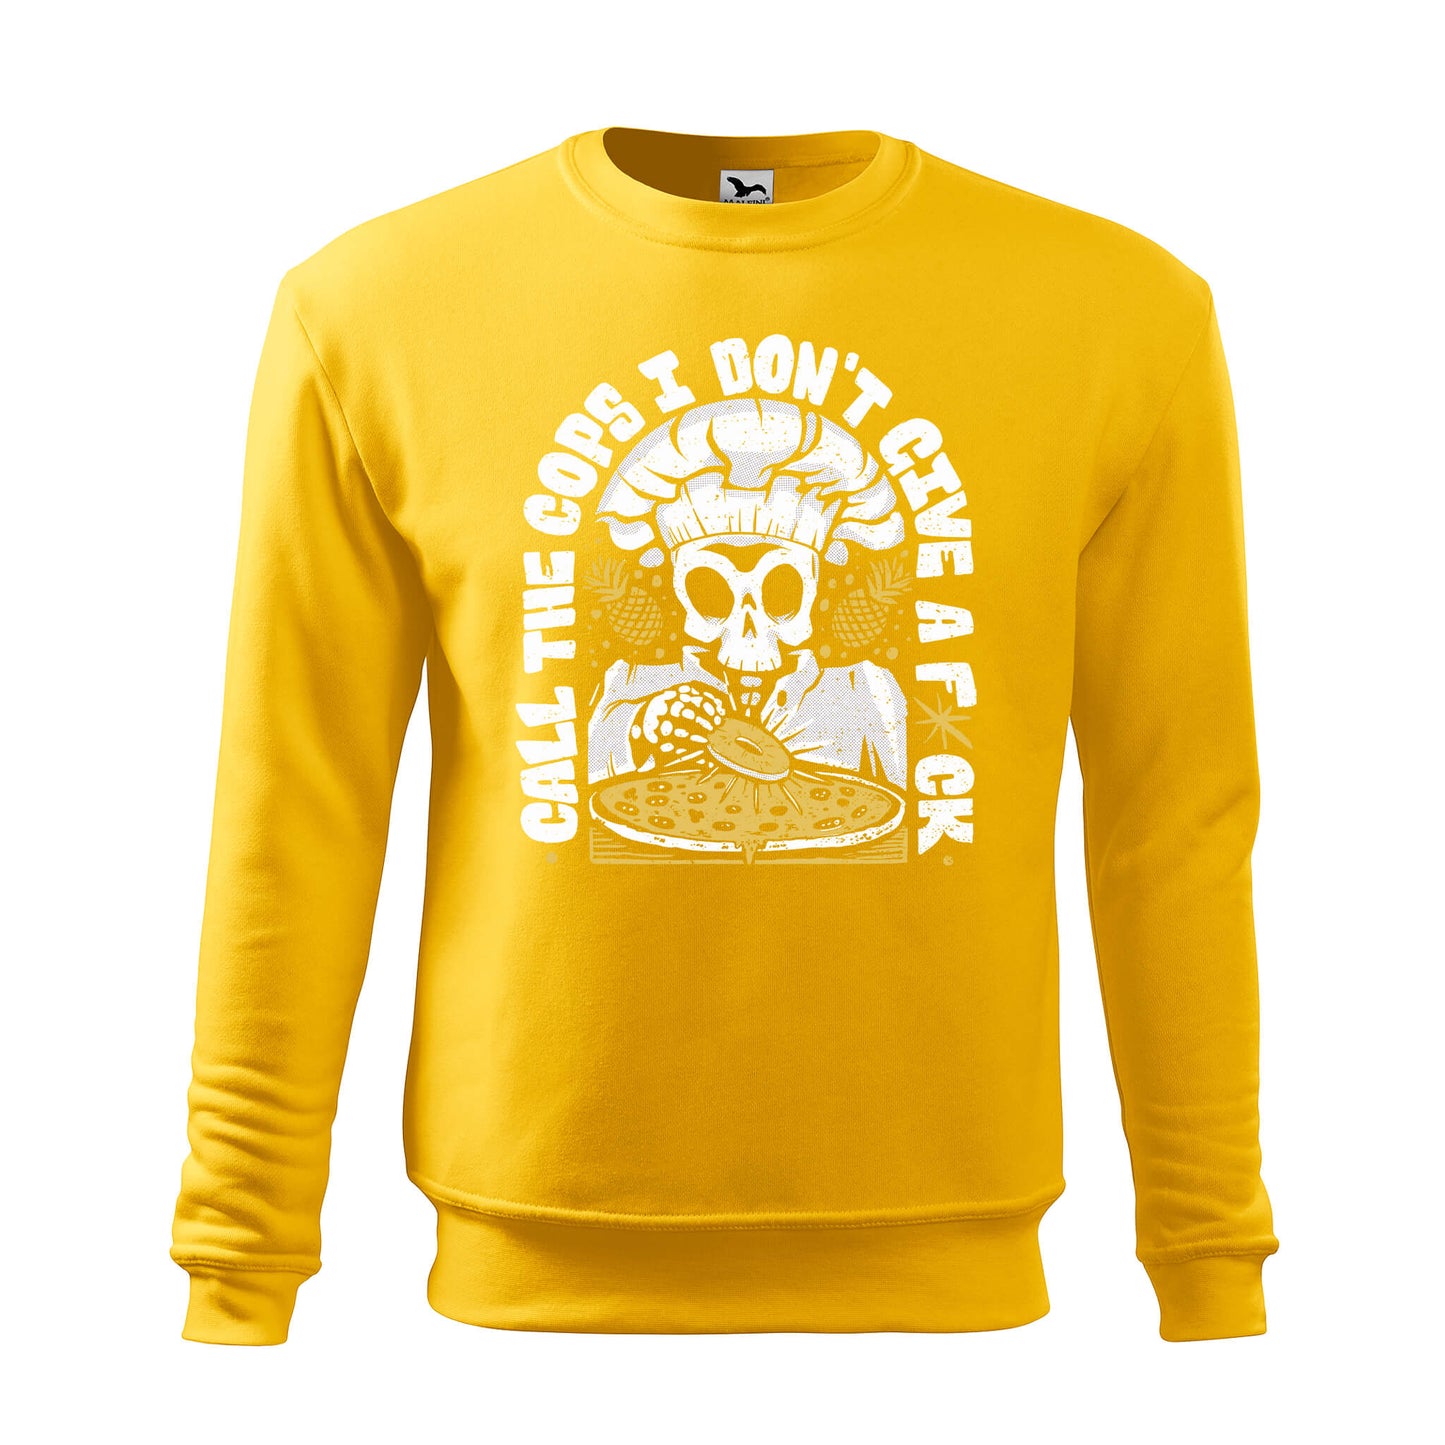 Pineapple pizza idgaf sweatshirt - rvdesignprint